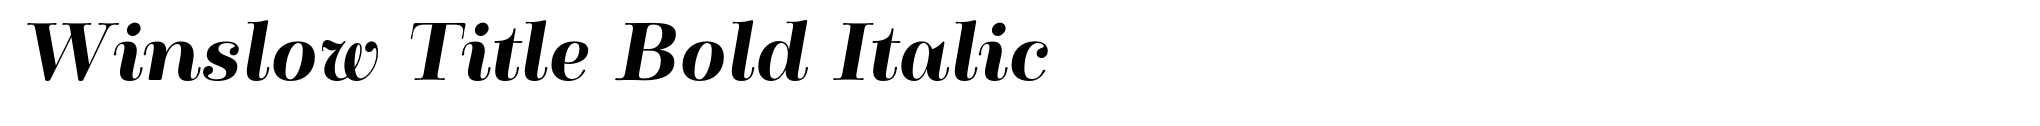 Winslow Title Bold Italic image